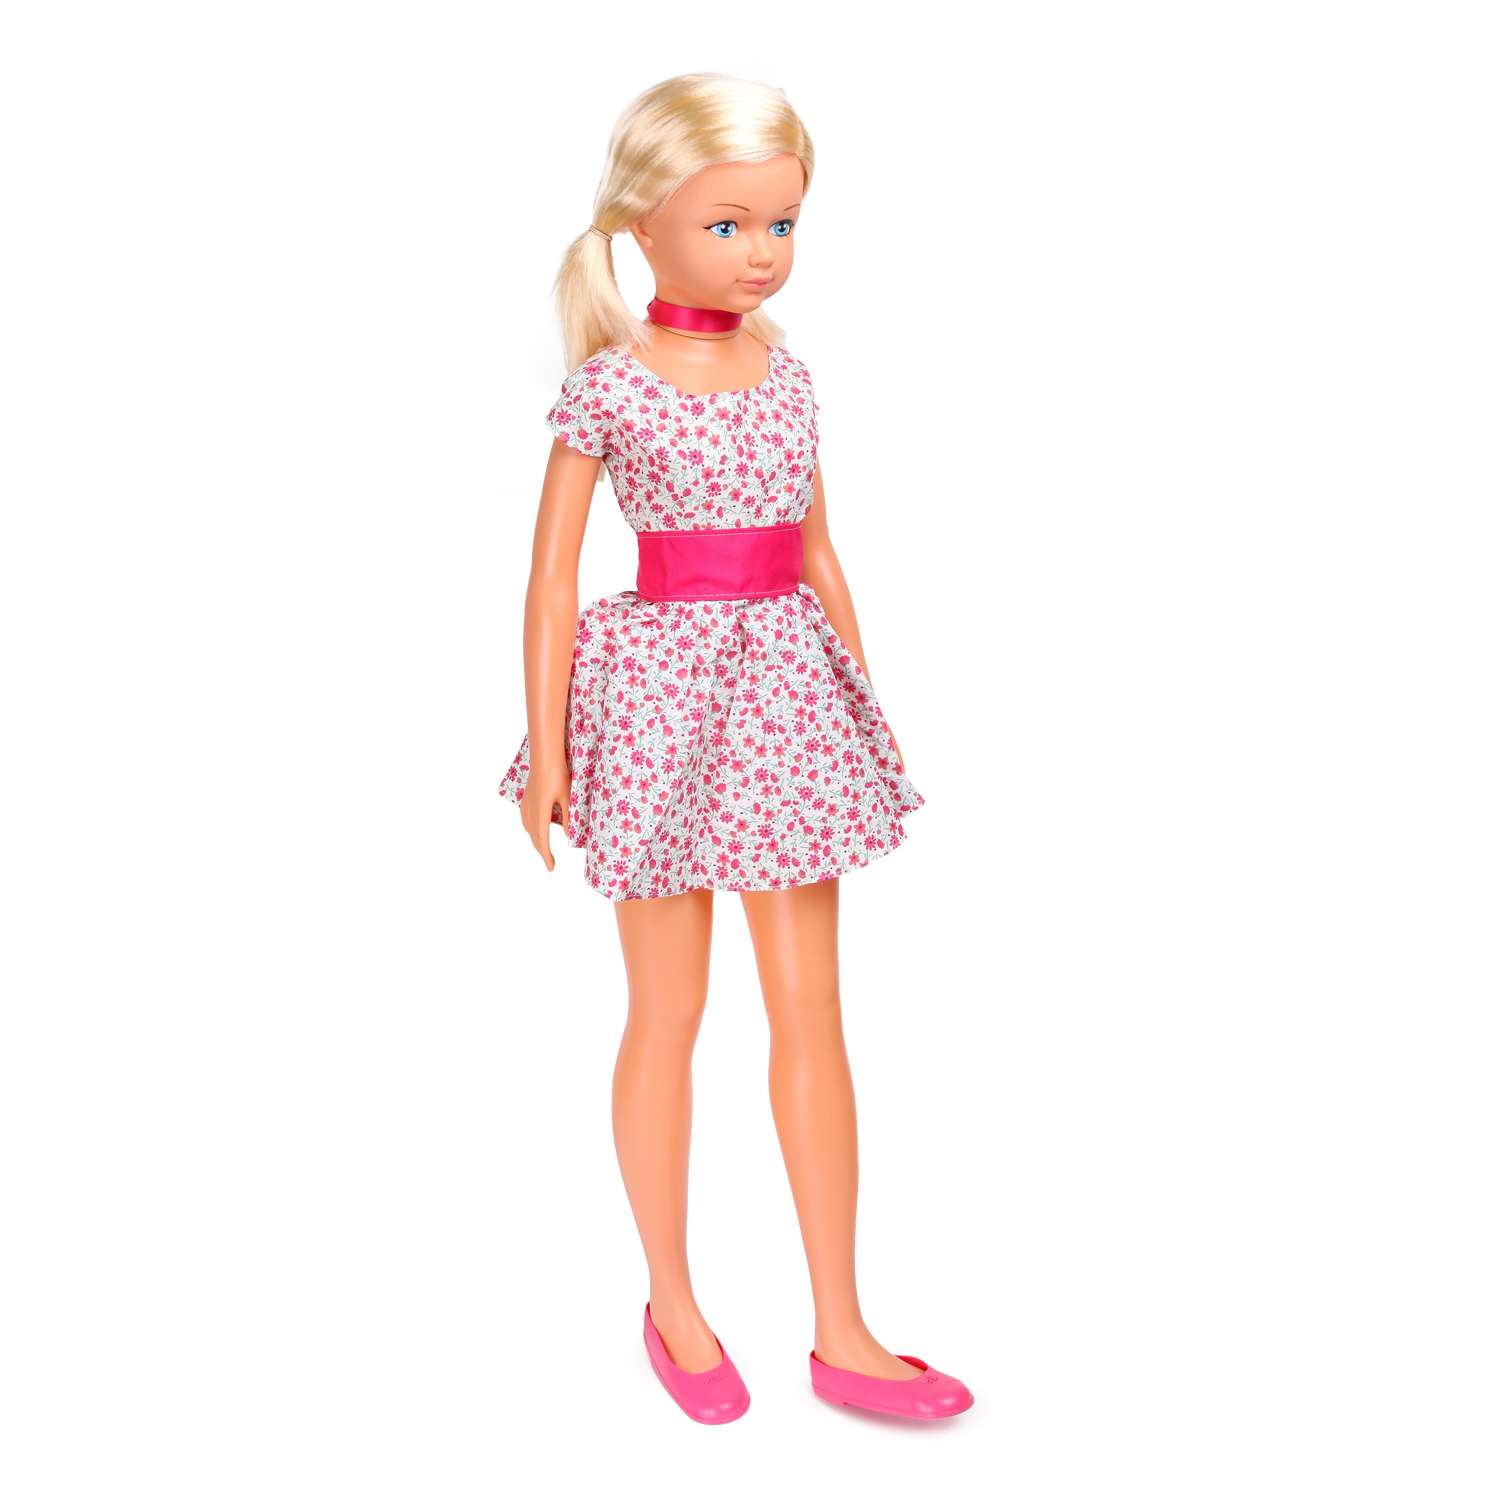 Кукла ростовая Demi Star Амелия в розовом платье 987/Rose 987/Rose - фото 1